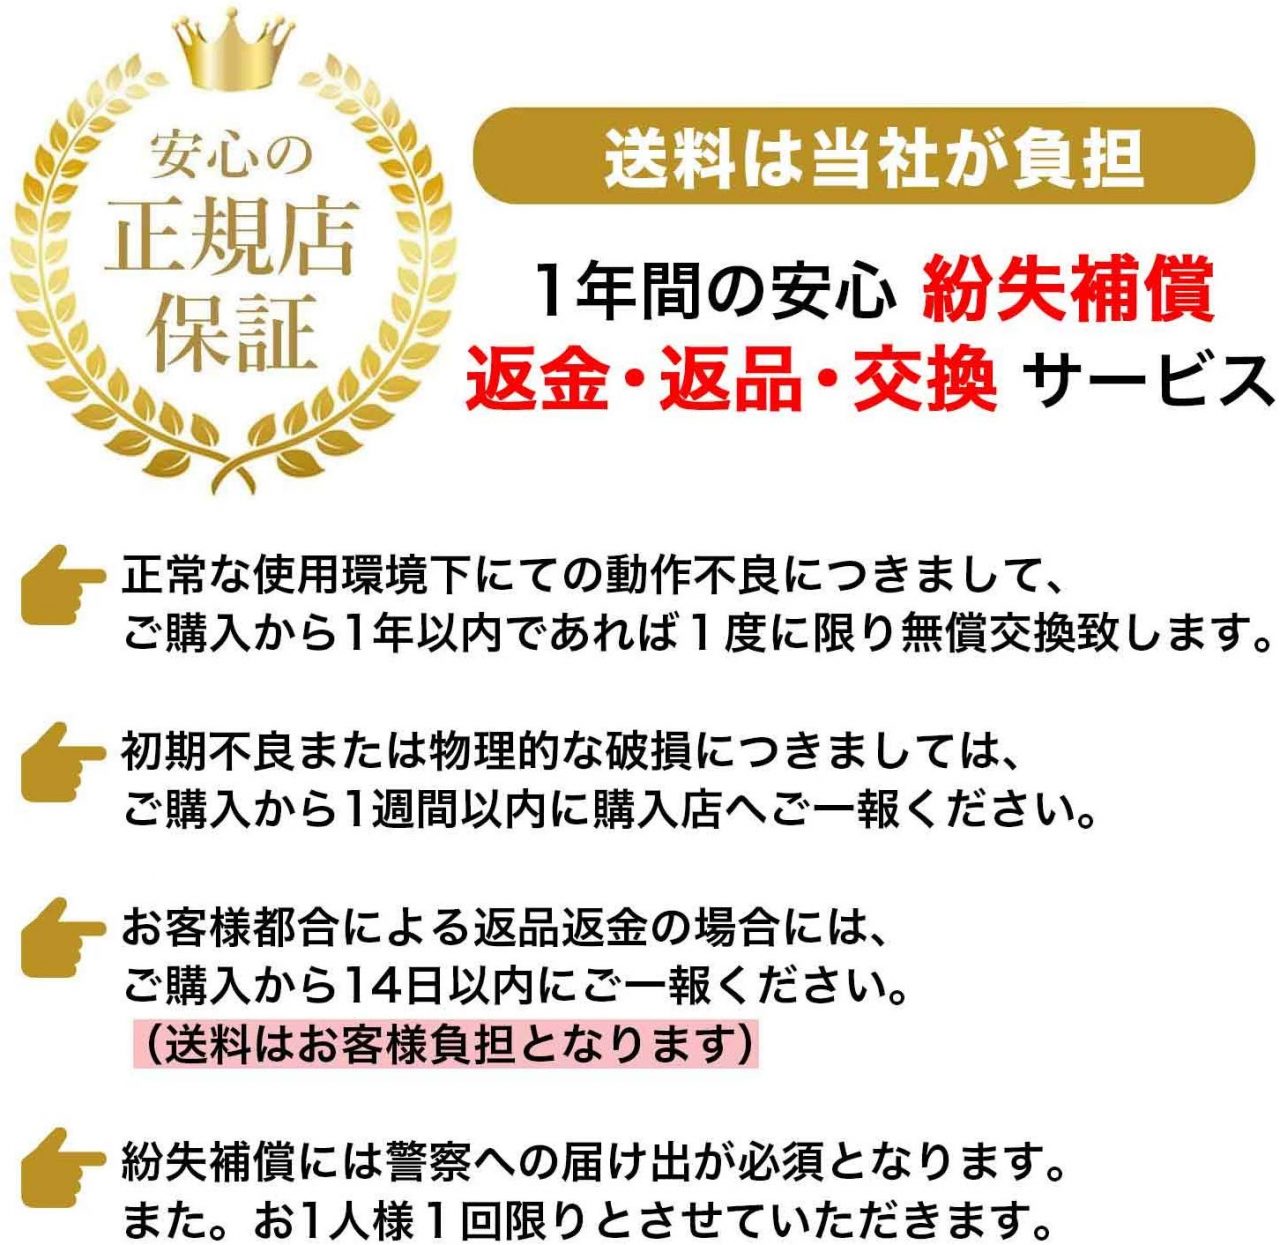 『ポケモンGO』用自動化ツール「ポケットオートキャッチ2」がAmazonでクーポン2,000円割引！